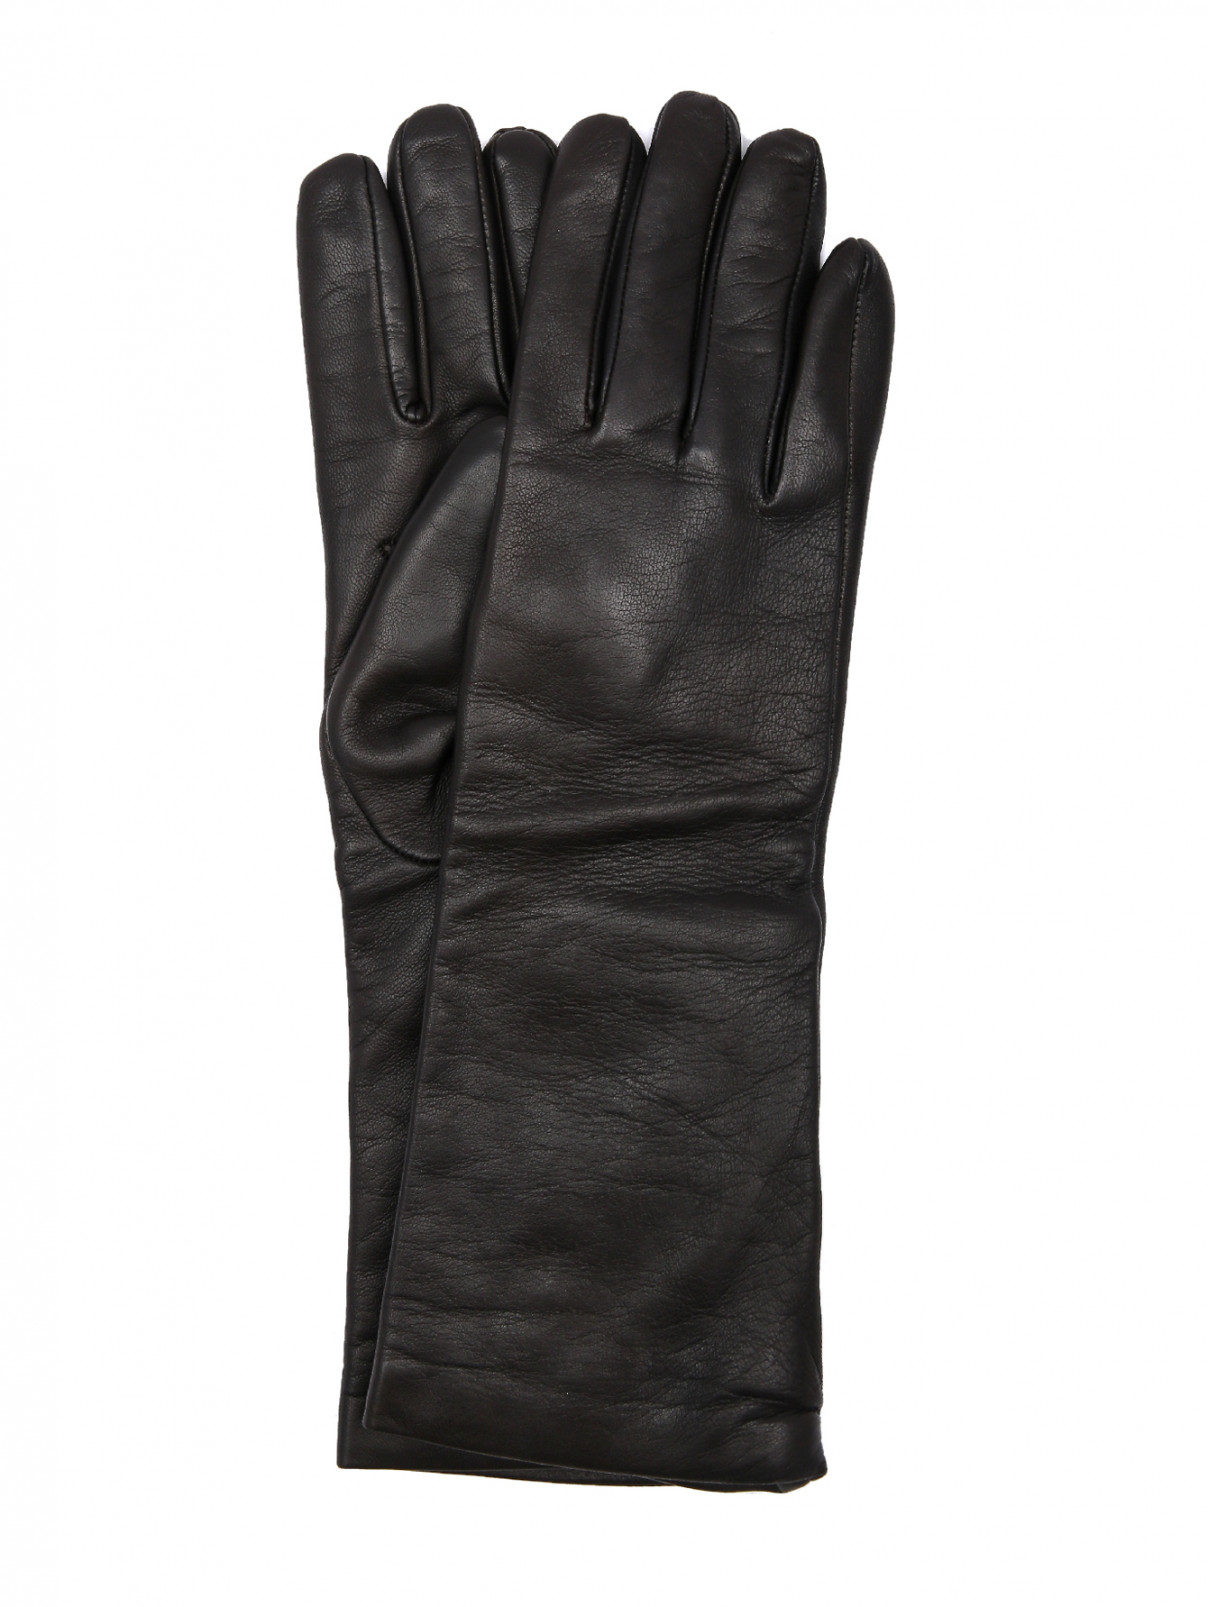 Высокие перчатки из гладкой кожи Weekend Max Mara  –  Общий вид  – Цвет:  Коричневый